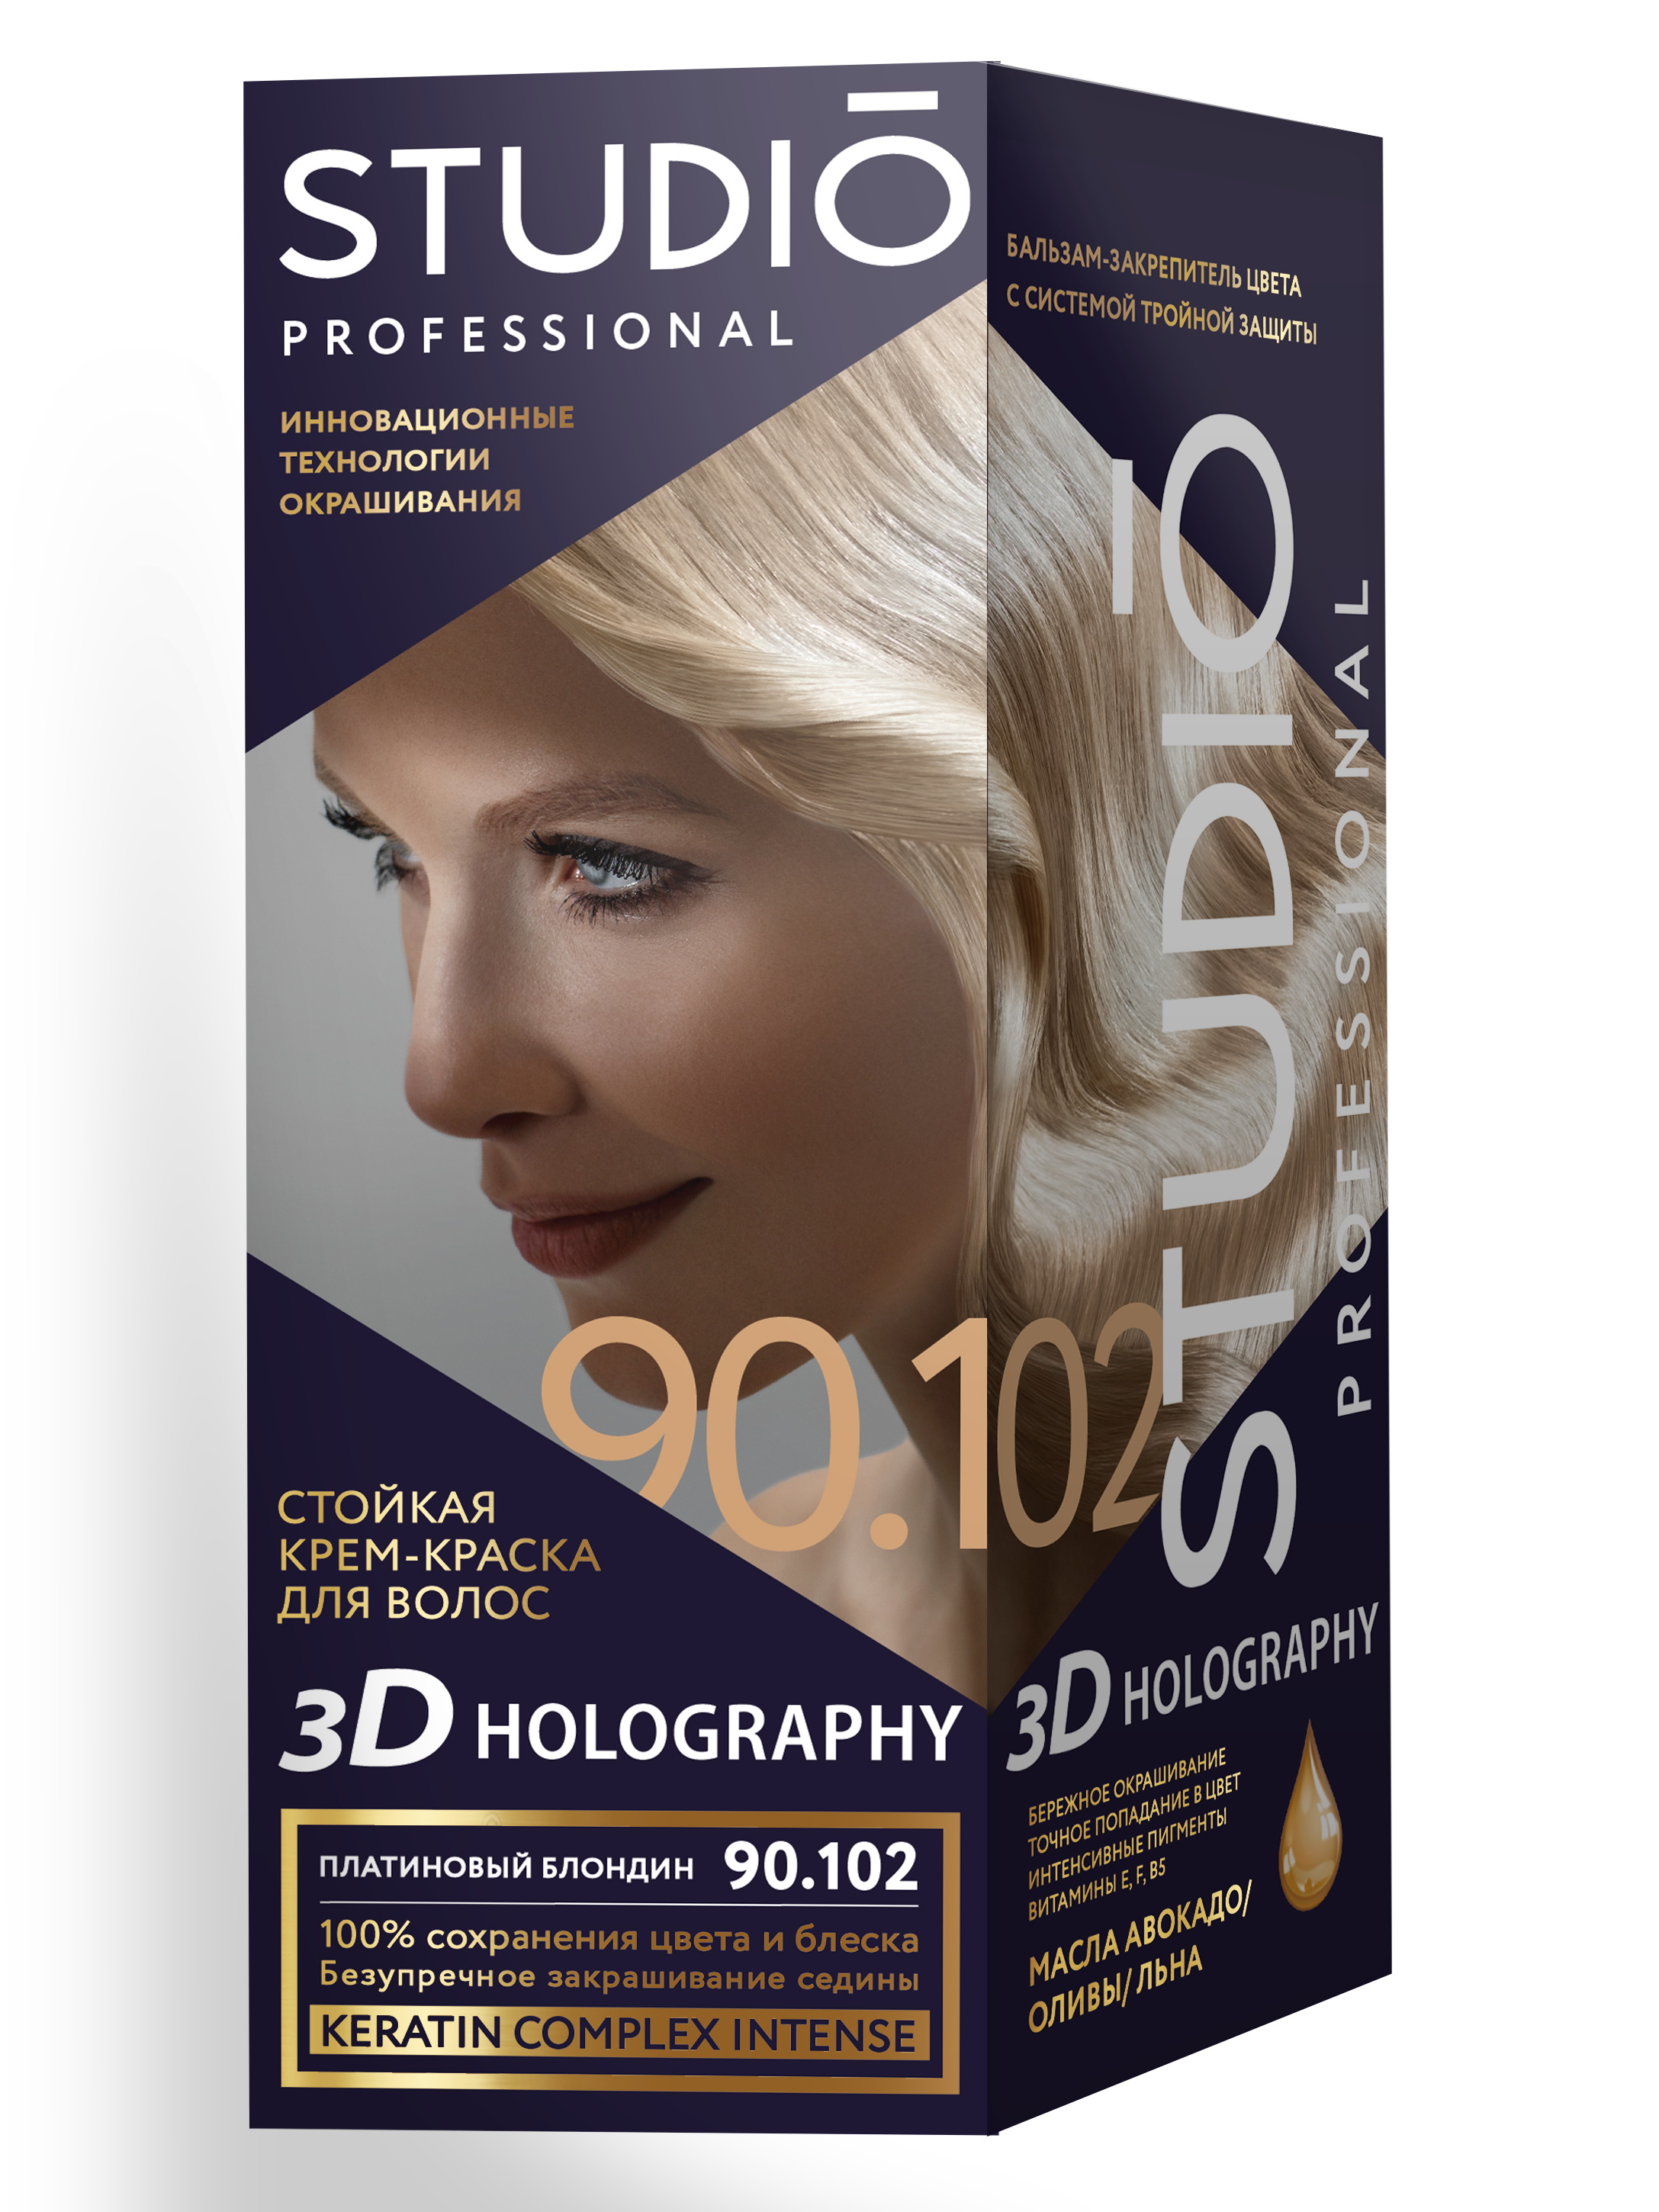 Комплект 3D HOLOGRAPHY STUDIO PROFESSIONAL 90.102 платиновый блондин 2*50+15 мл